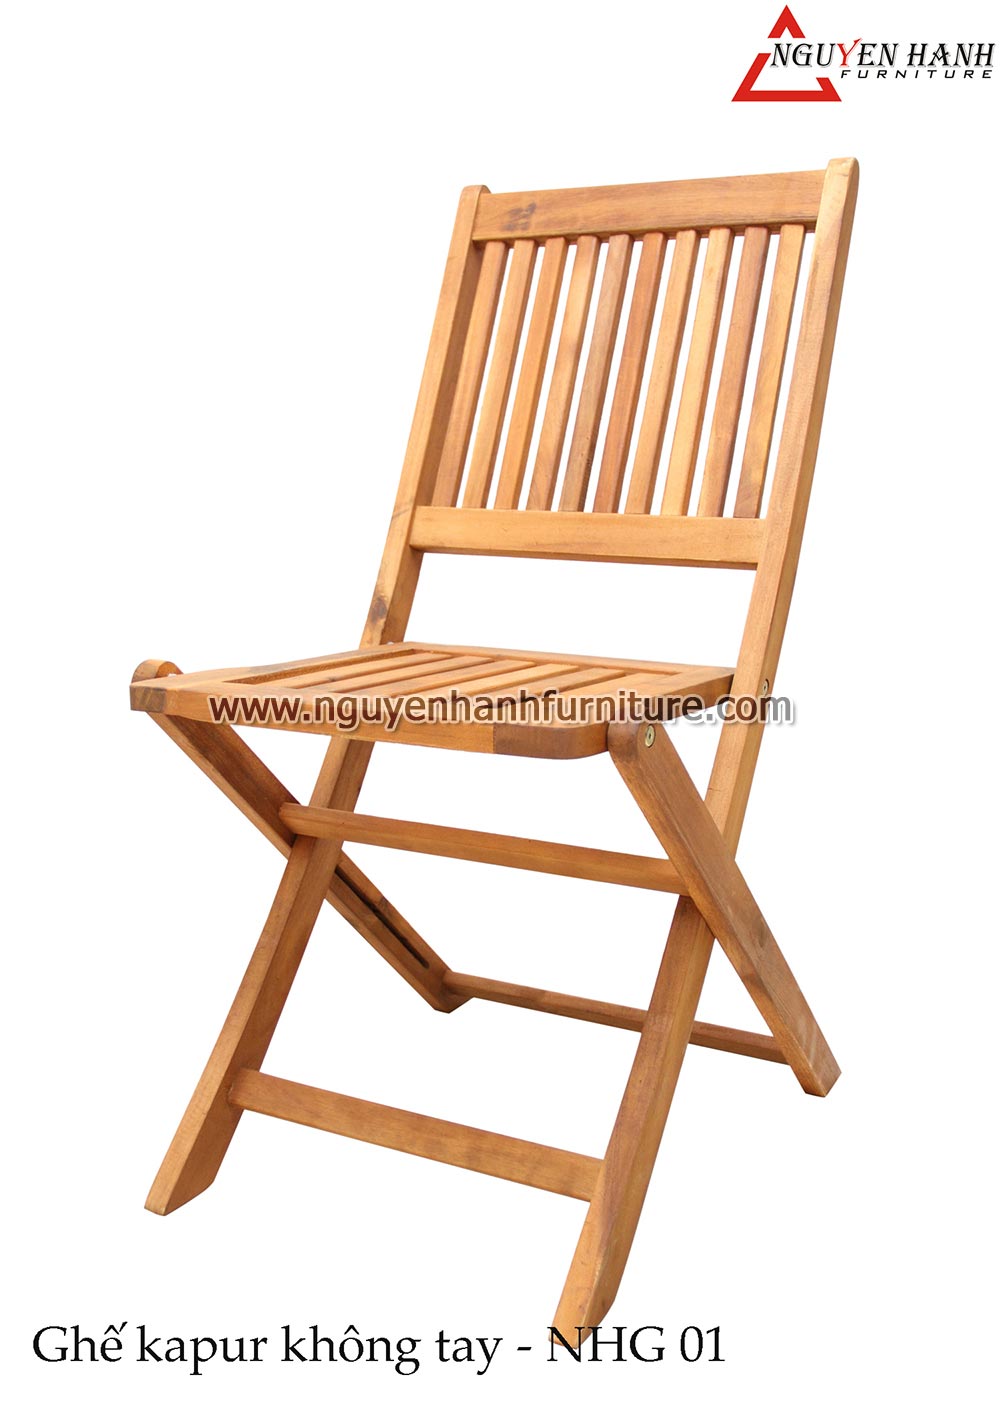 Name product: No armrest Kapur chair NHG01 - Dimensions:  - Description: Encalyptus wood